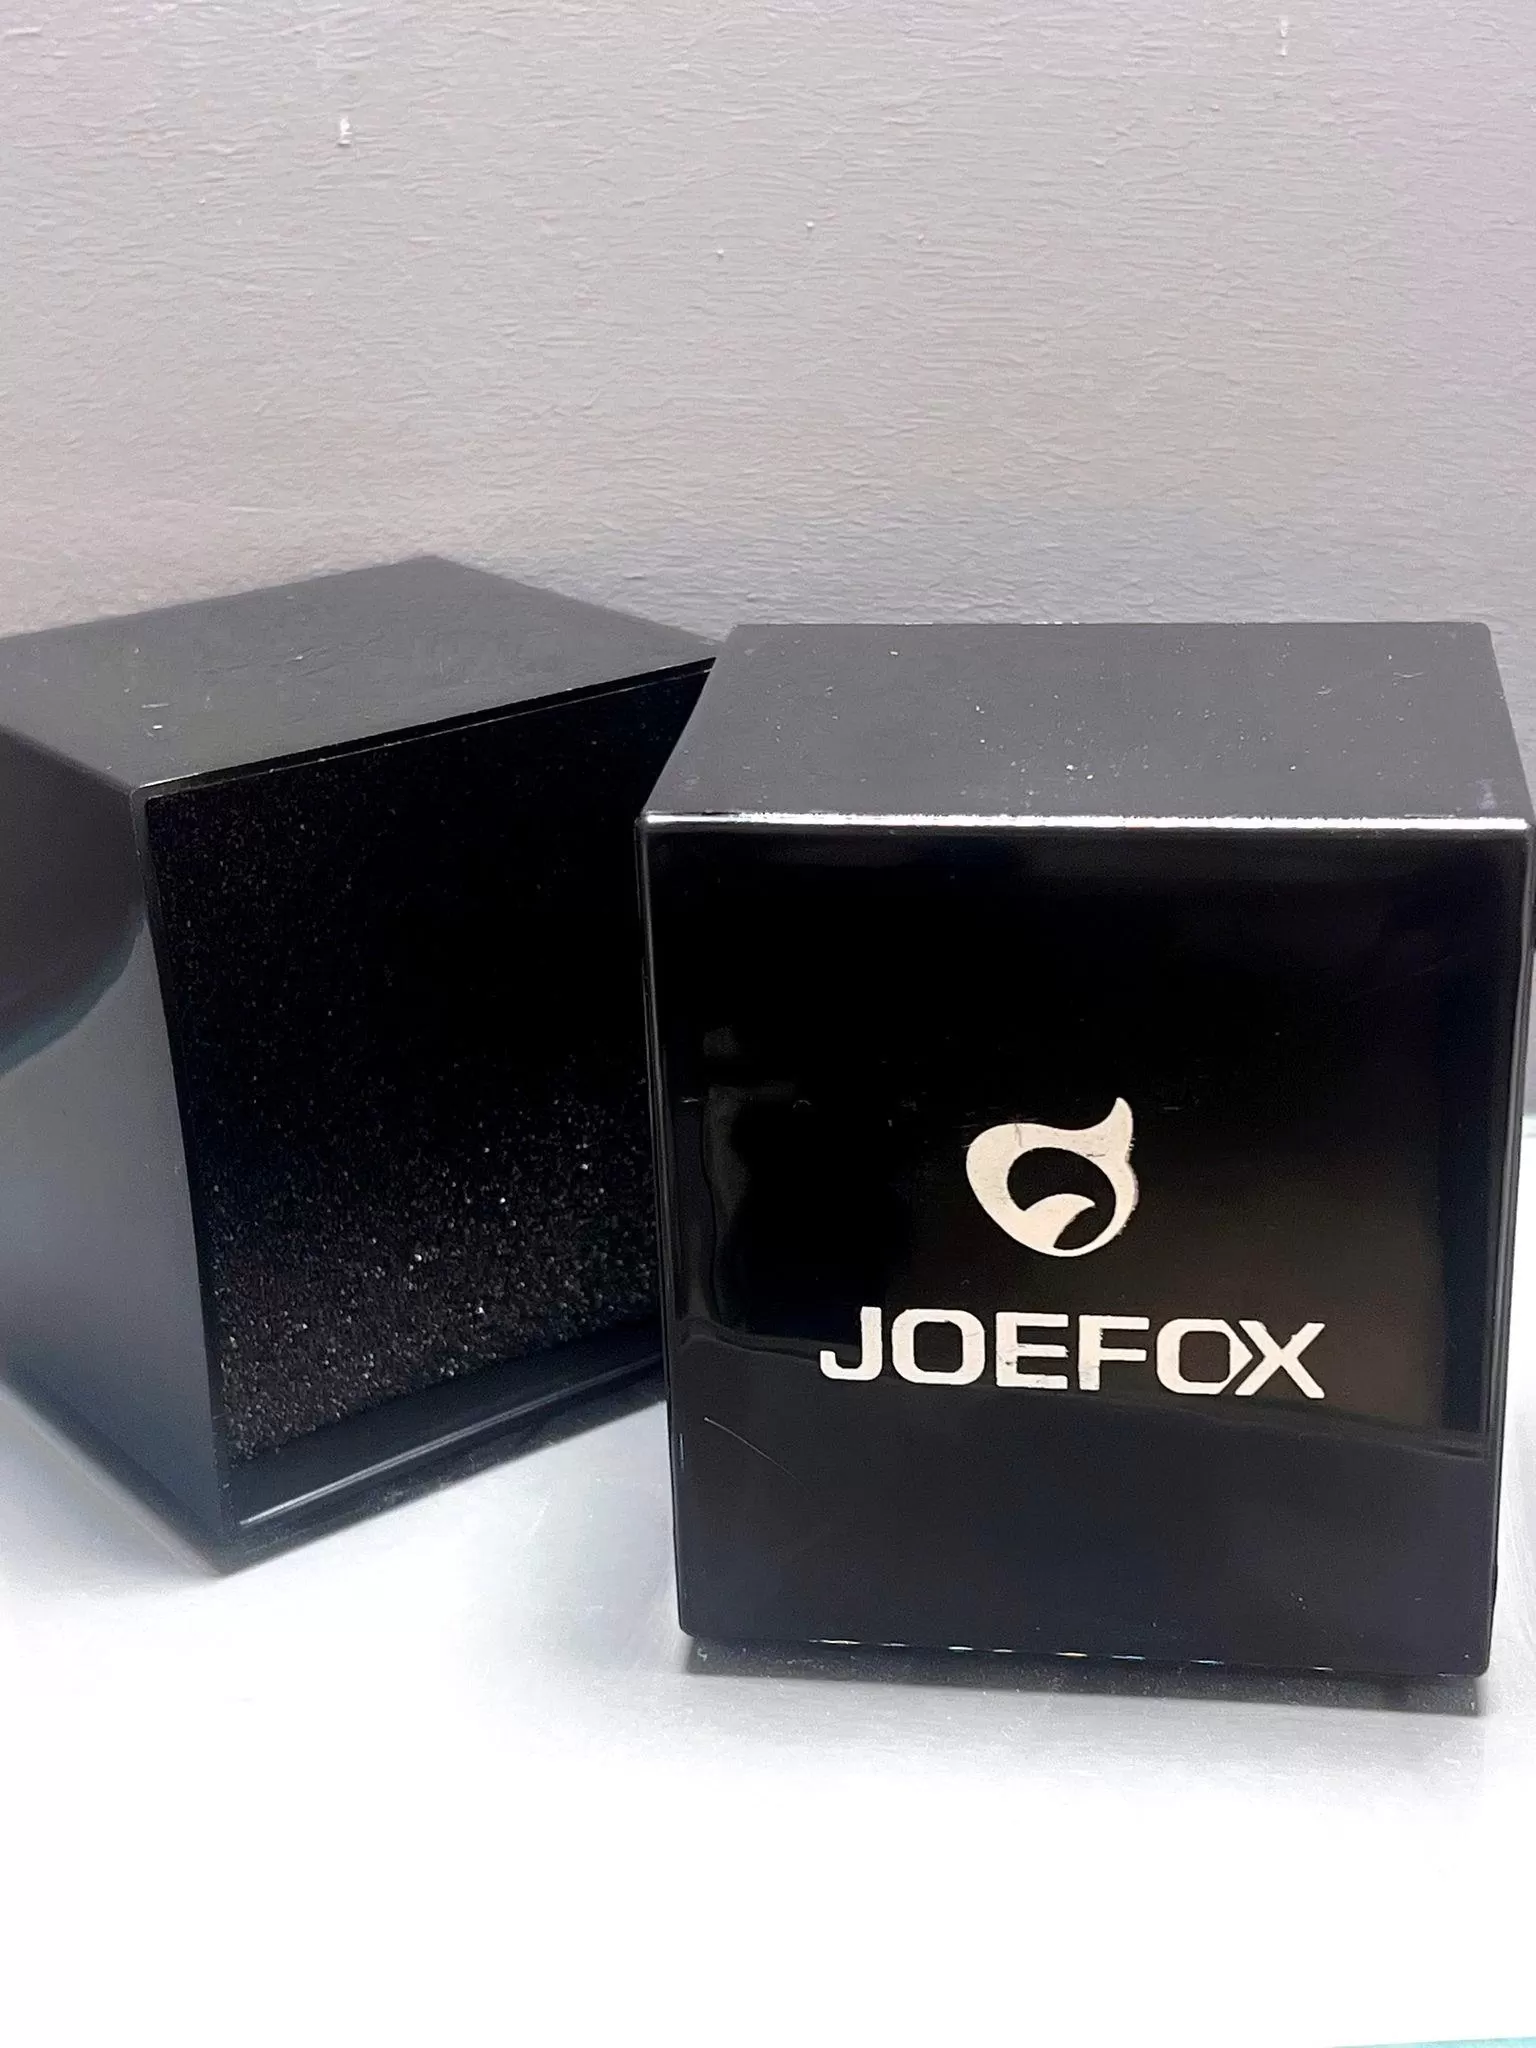 JOE-KJ04 Joefox Digital&Analog Kronmetre+Takvim+Alarm+Aydınlatma Erkek Kol Saati